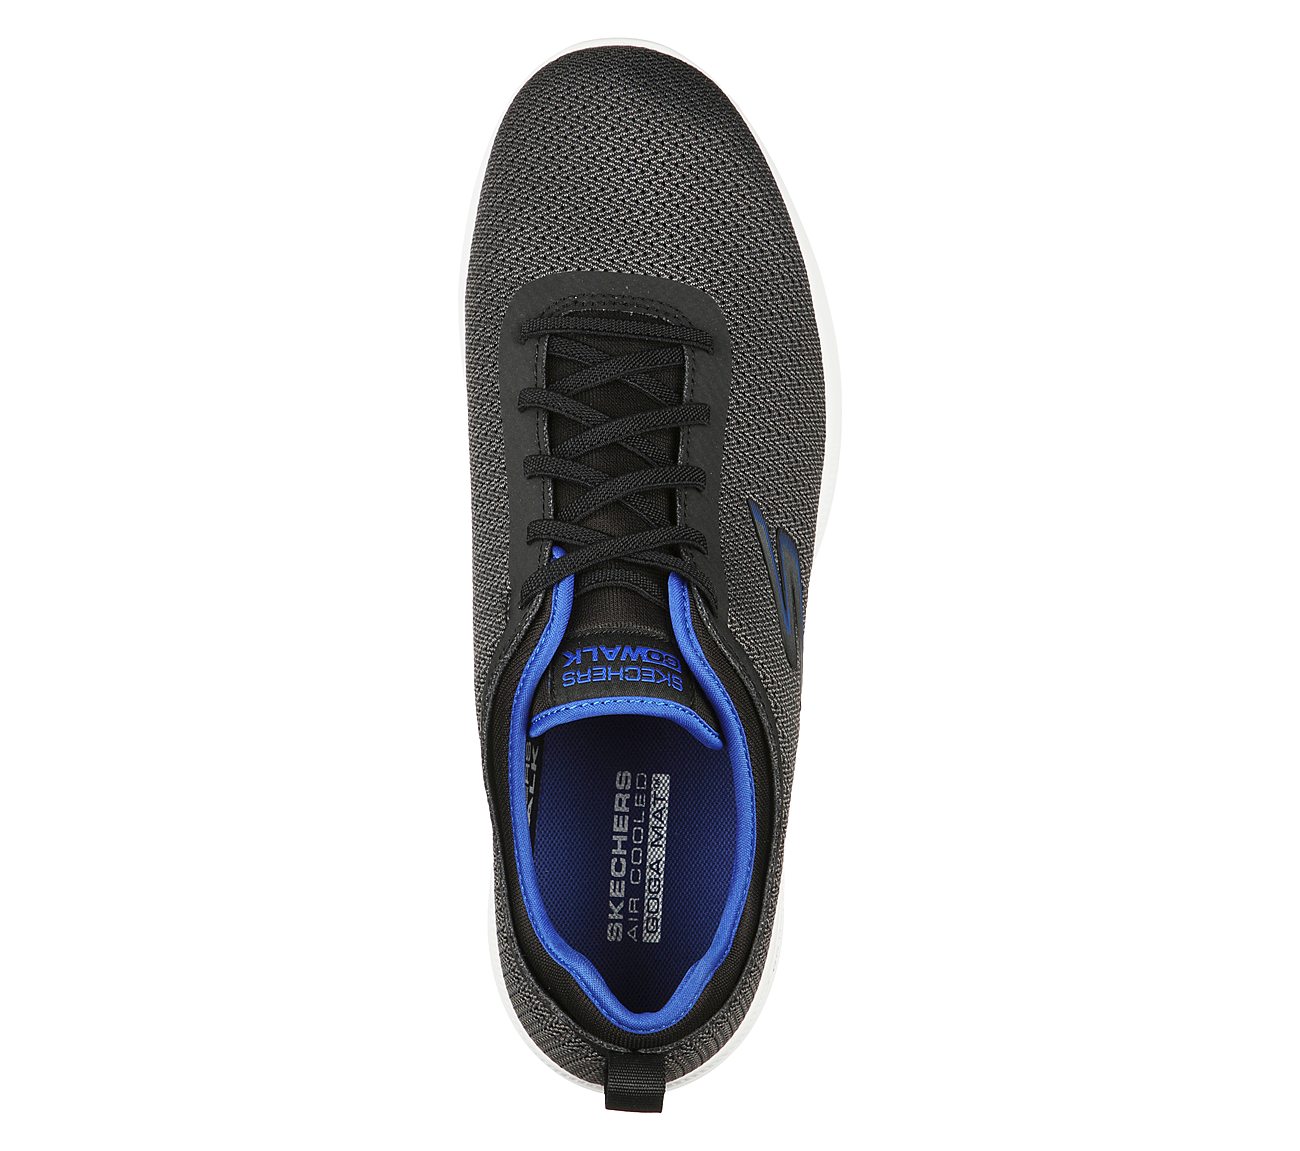 GO WALK STABILITY - PROGRESS, BLACK/BLUE Footwear Top View